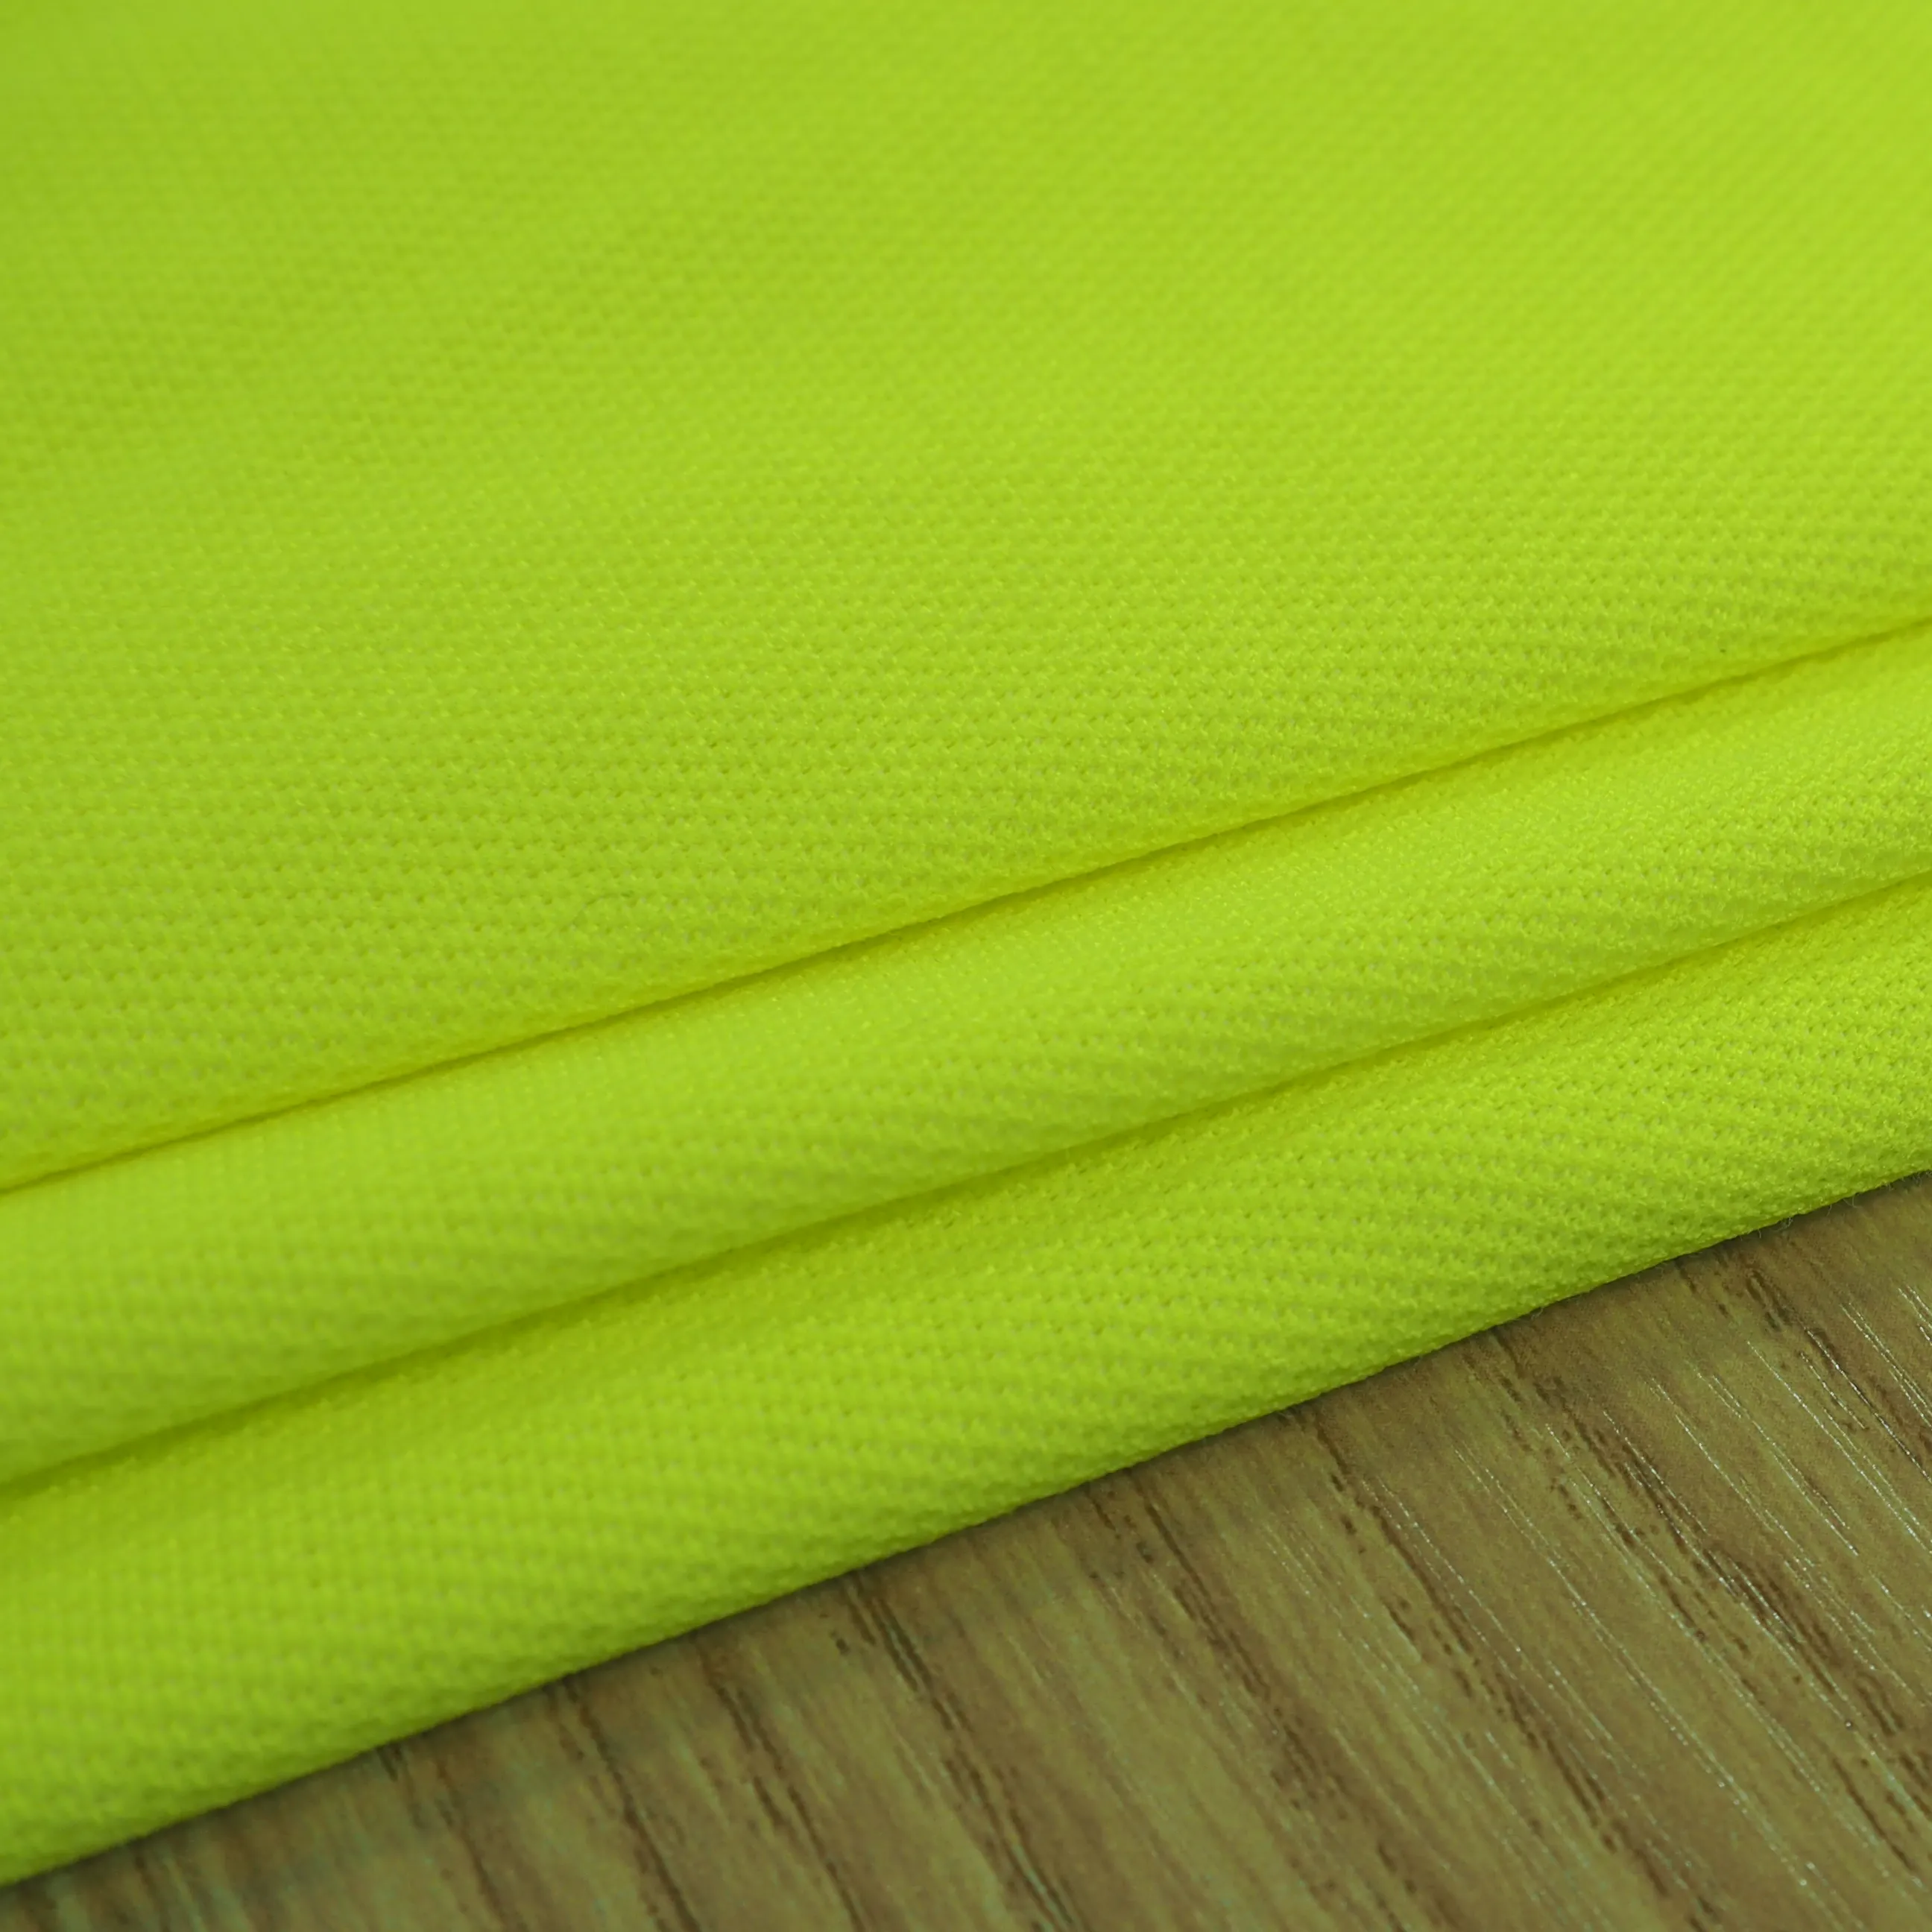 EN20471 fluorescente 100% poliestere tessuto a maglia jersey piqué con retro in cotone poliestere ad alta visibilità